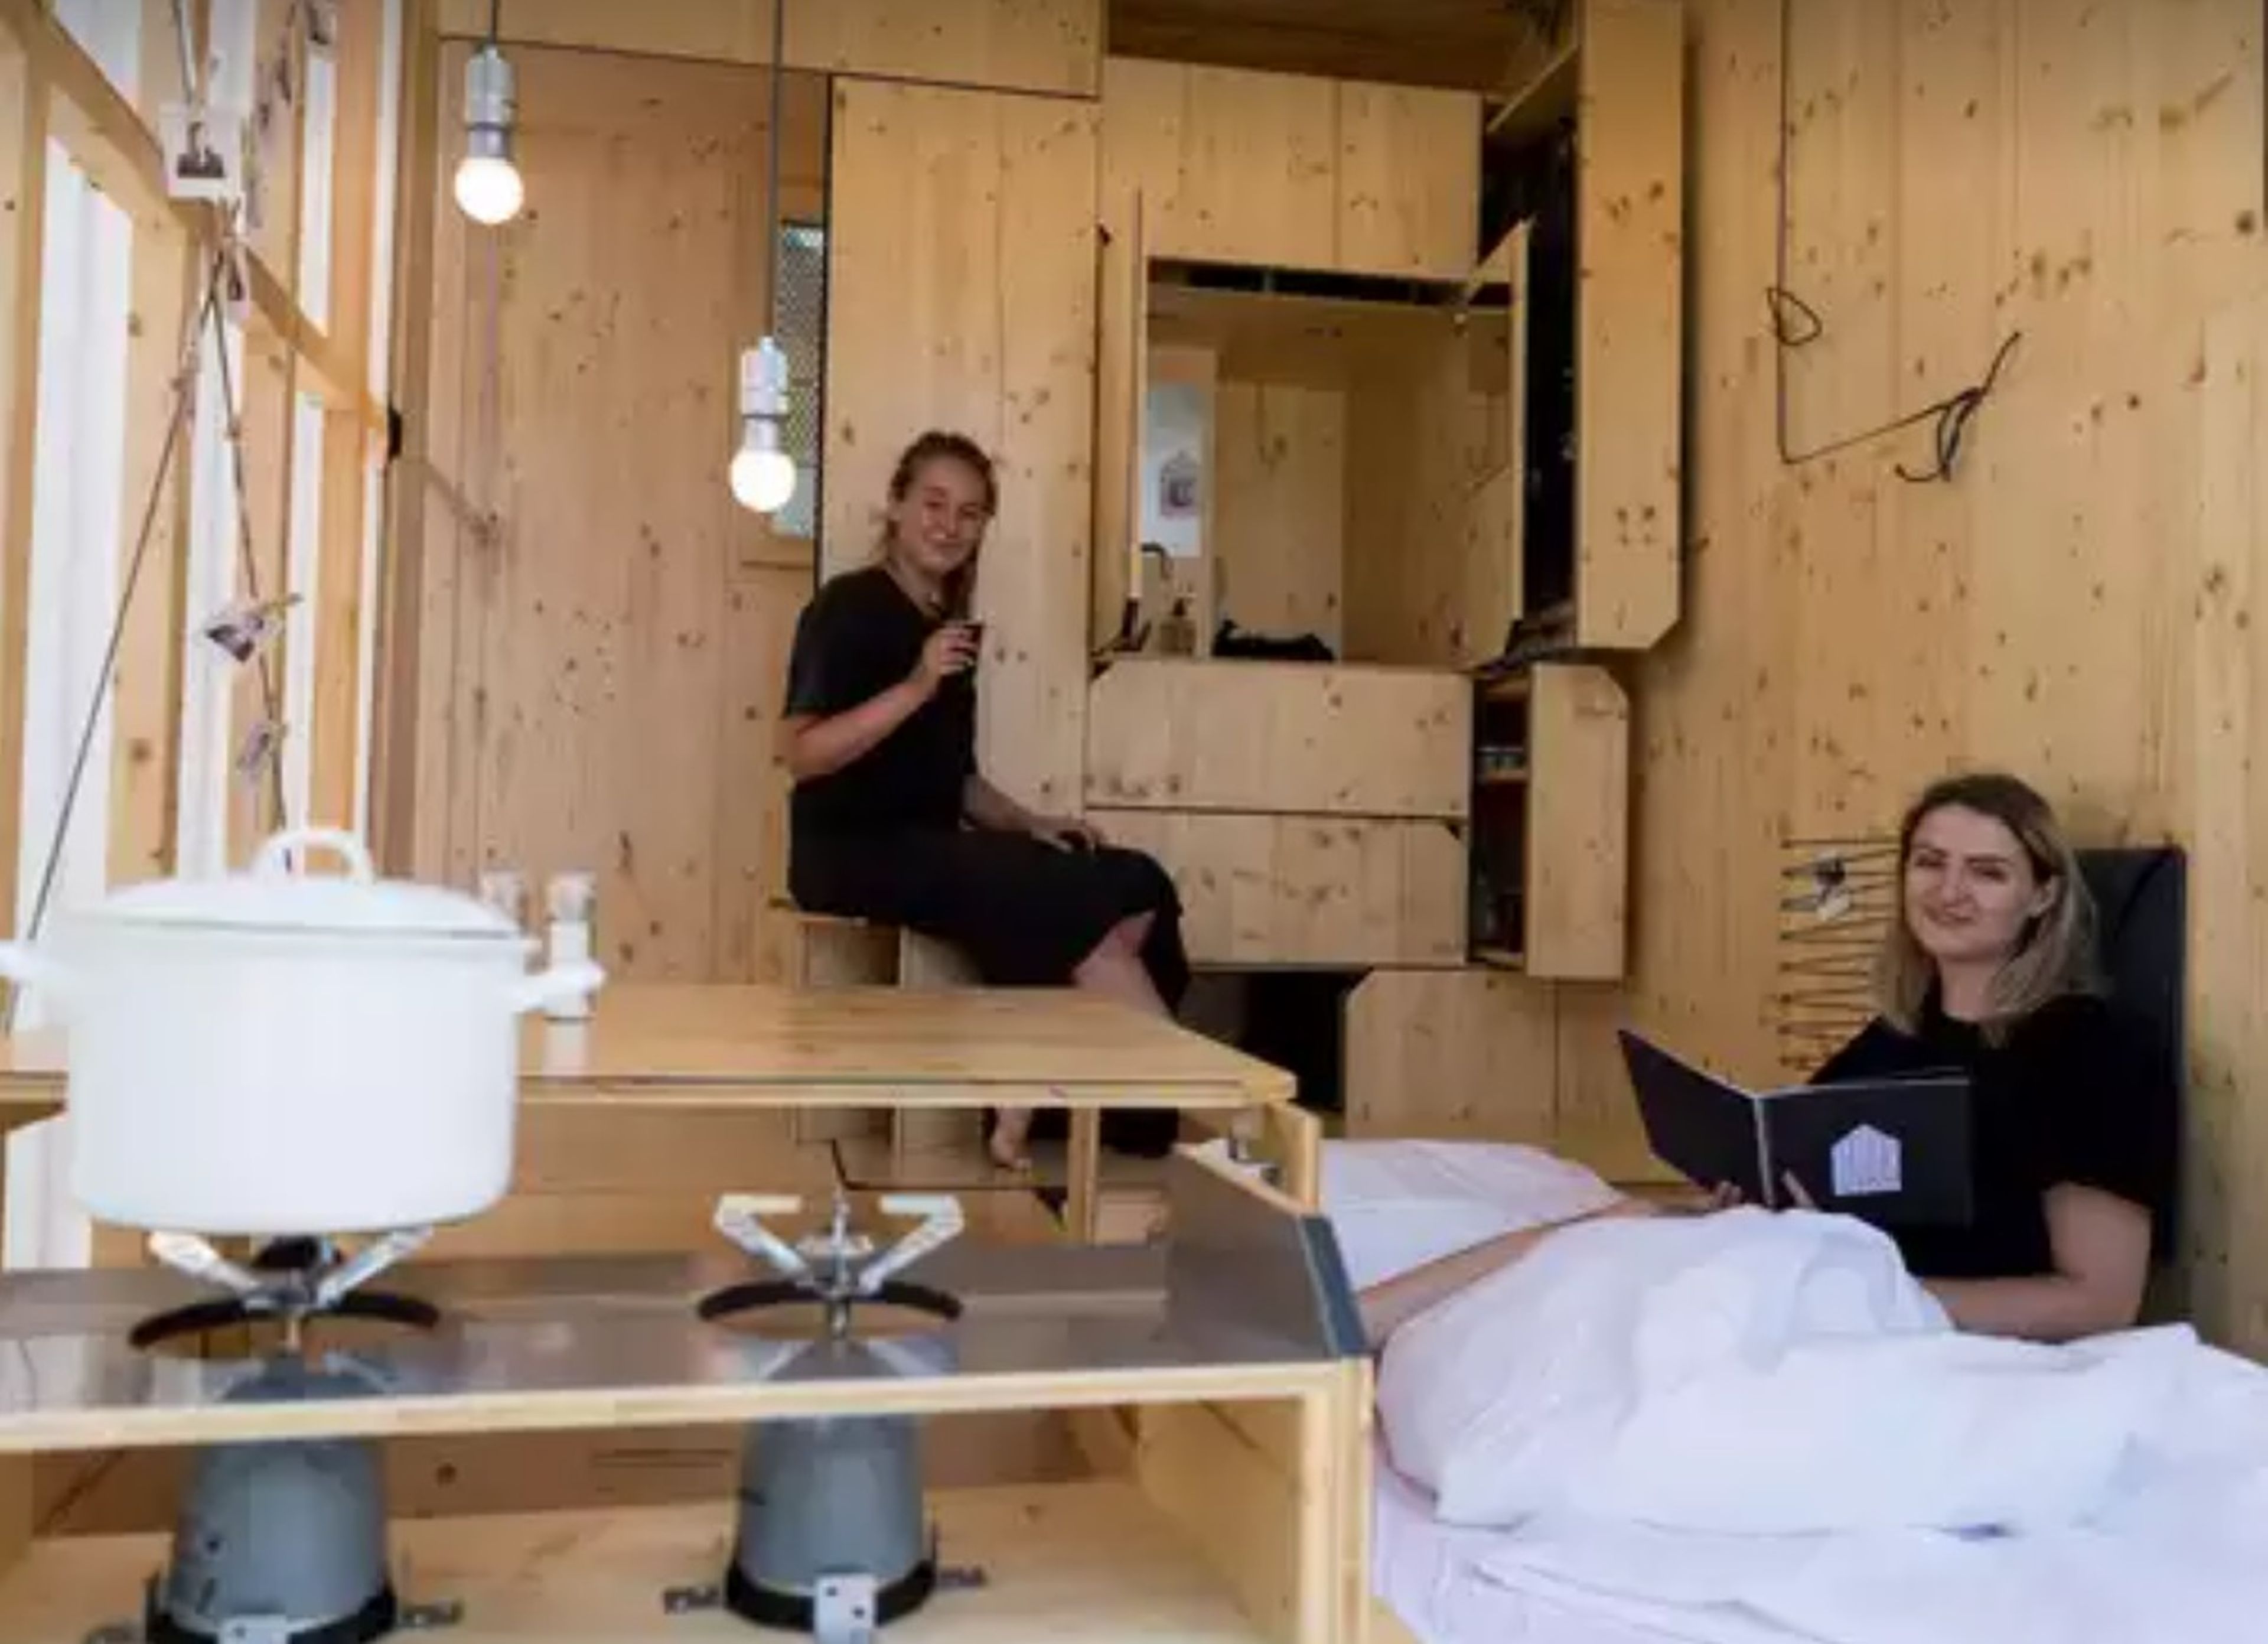 Las estudiantes de arquitectura Sarah Ullmayer y Sophie Kany sentadas en su pequeña casa en el campus de la Bauhaus en Berlín.